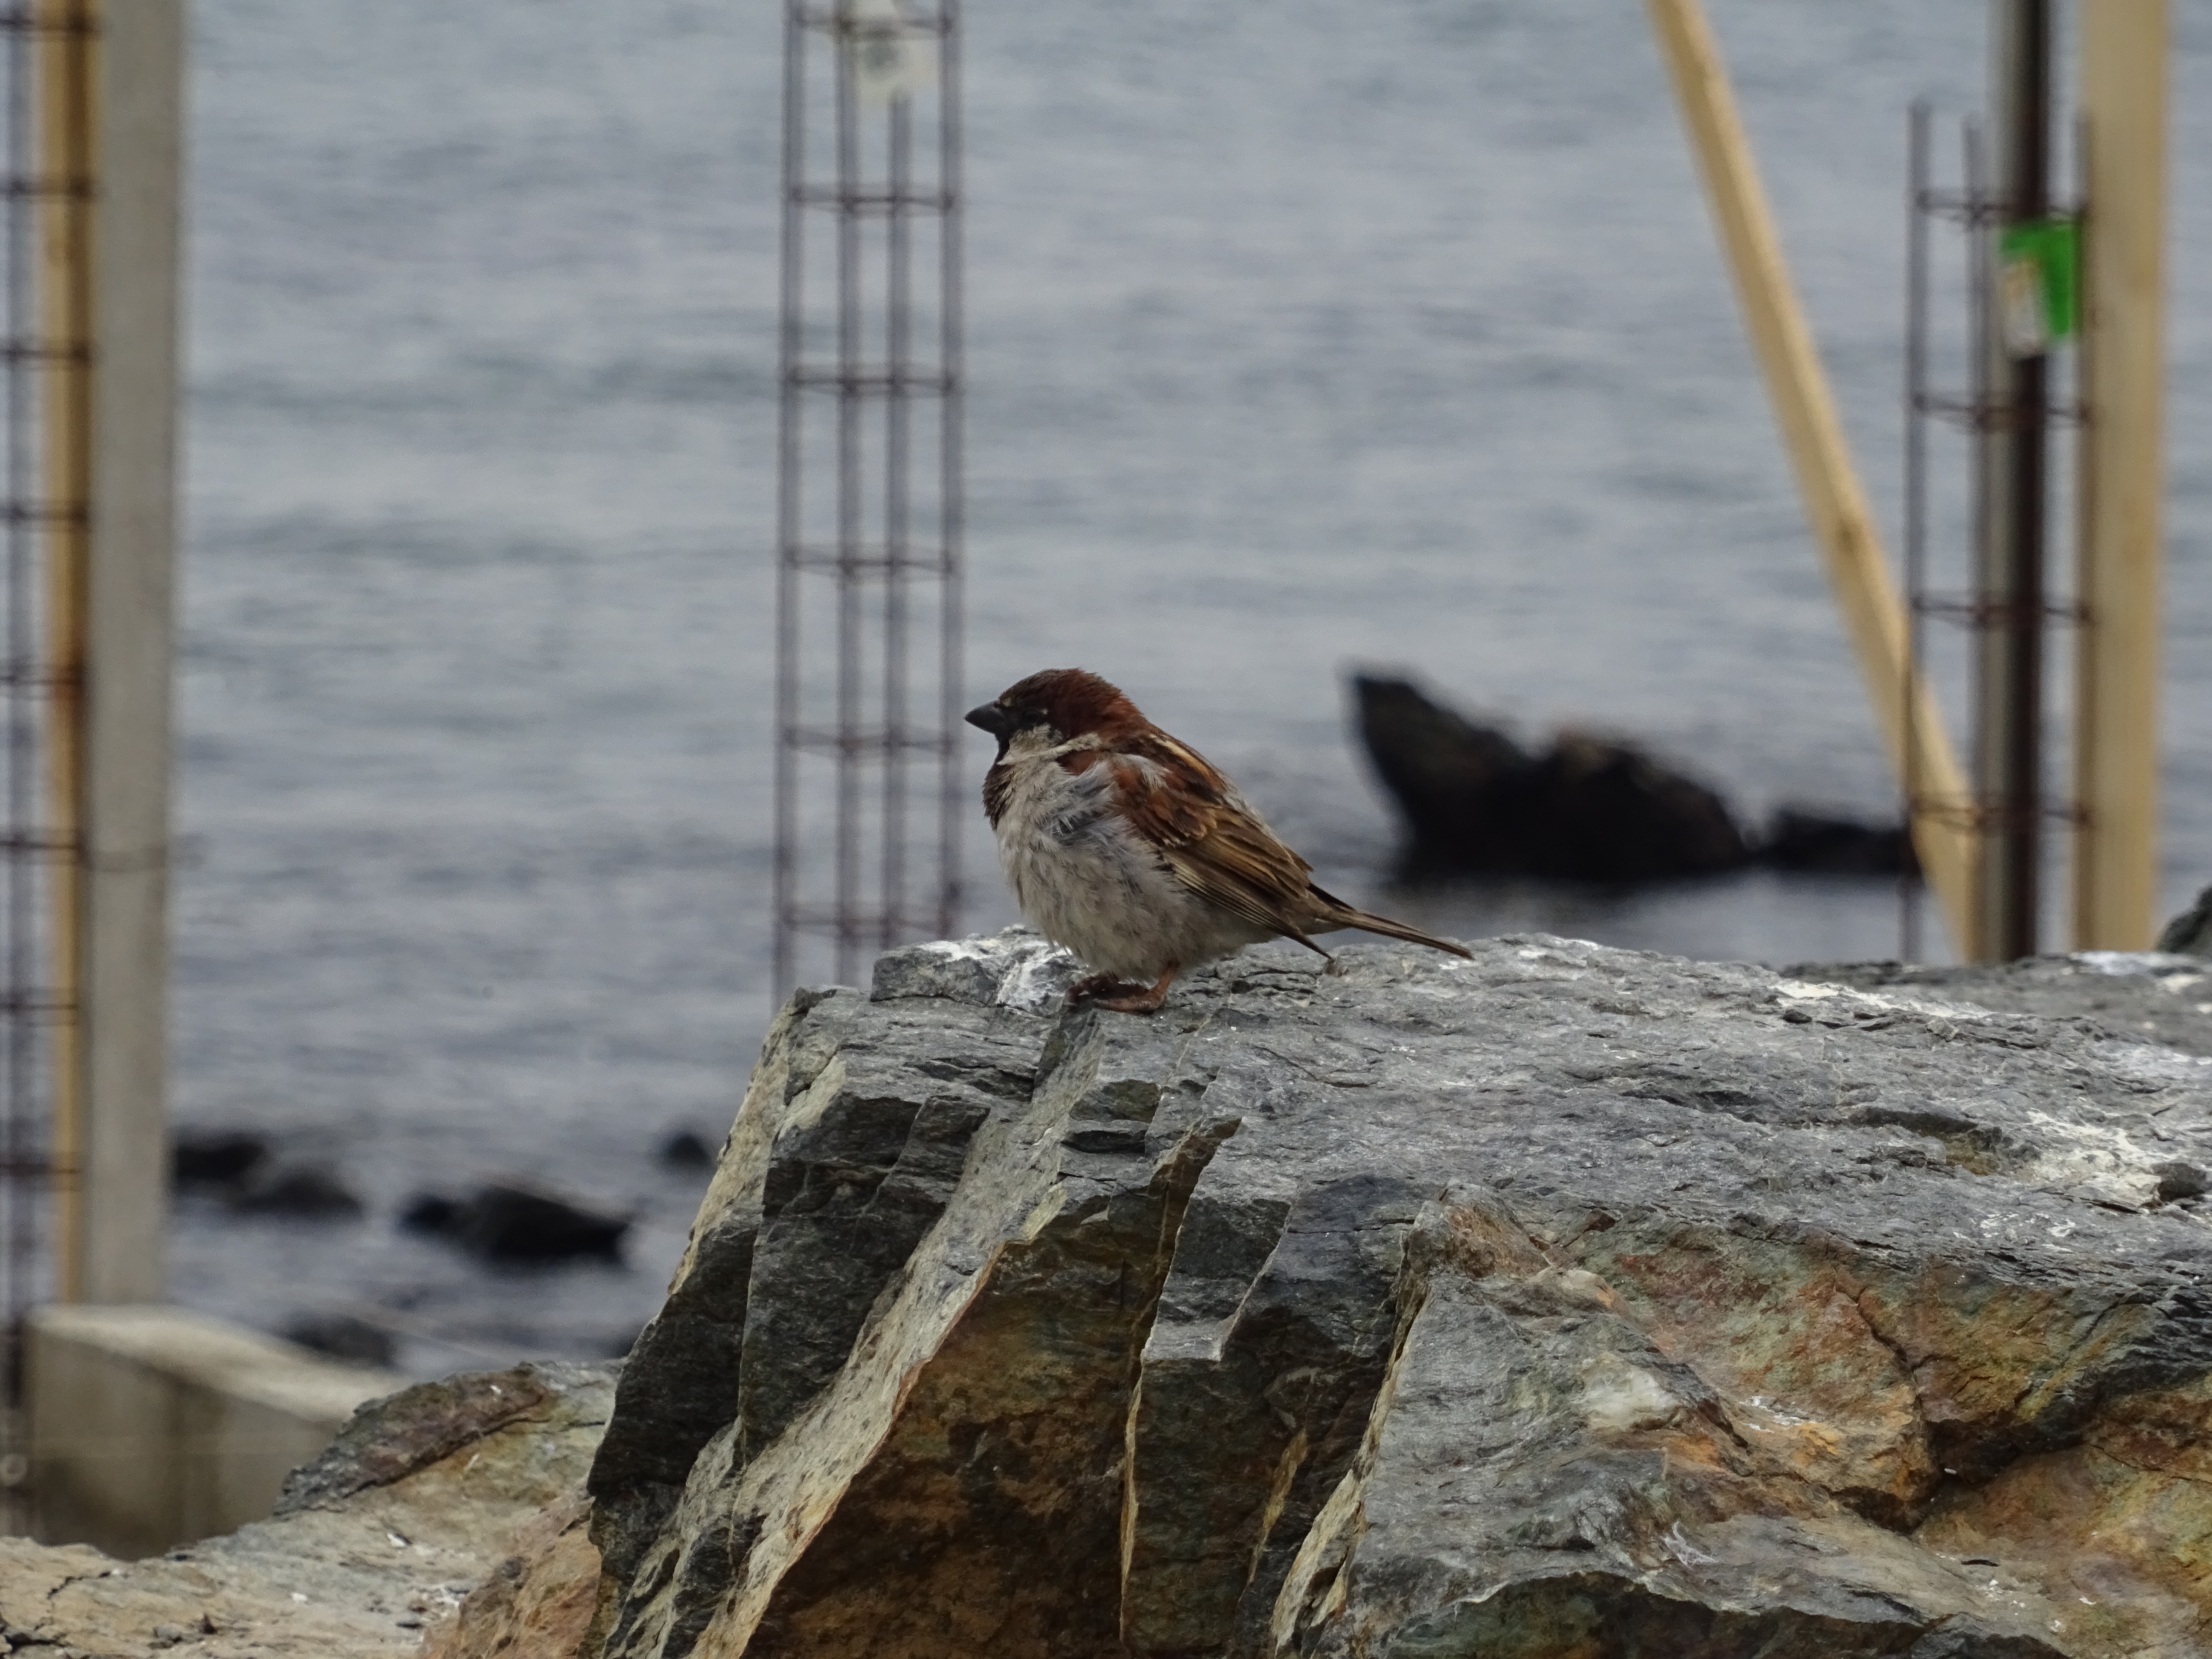 A bird by the shore